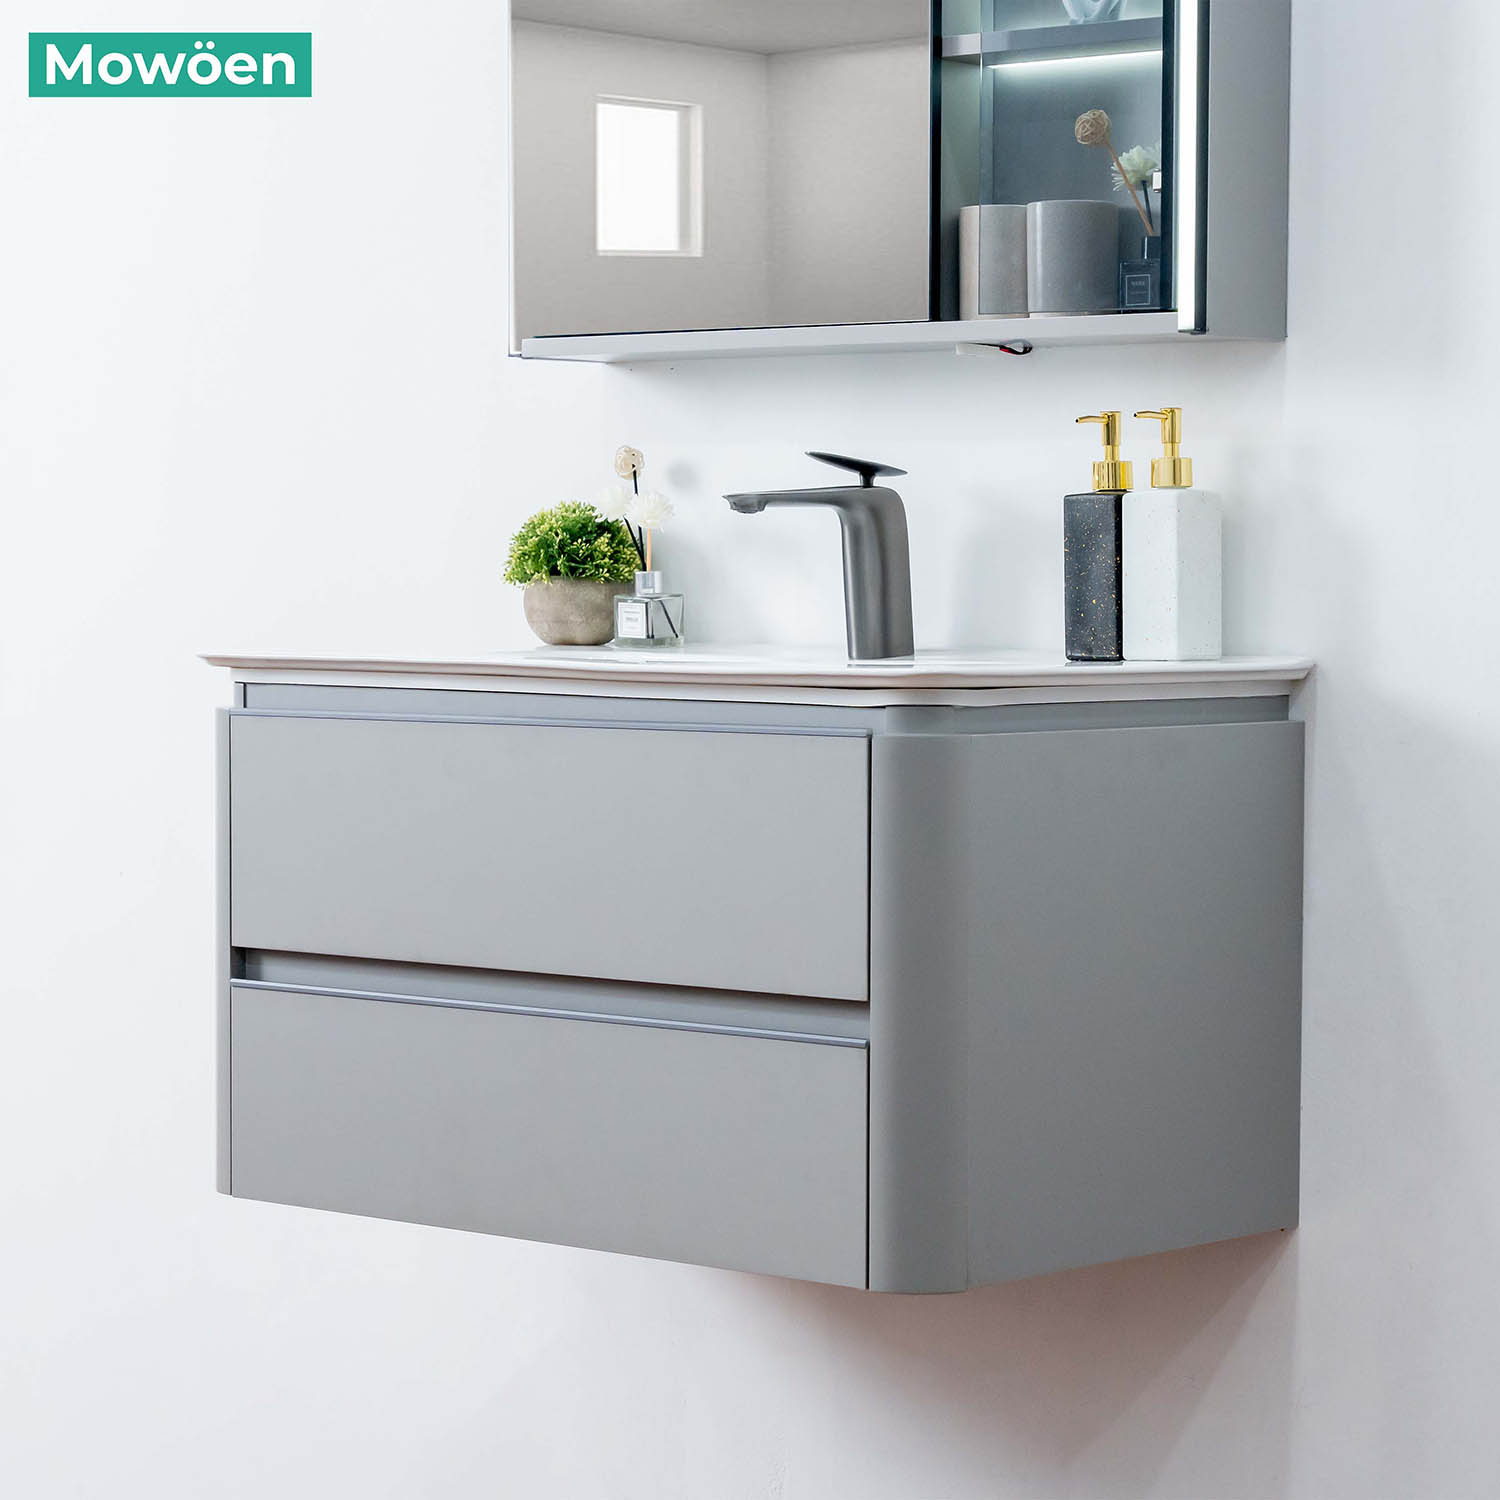 Tủ Lavabo Mowoen MW6632 – 80 chất liệu Plywood treo tường phòng tắm